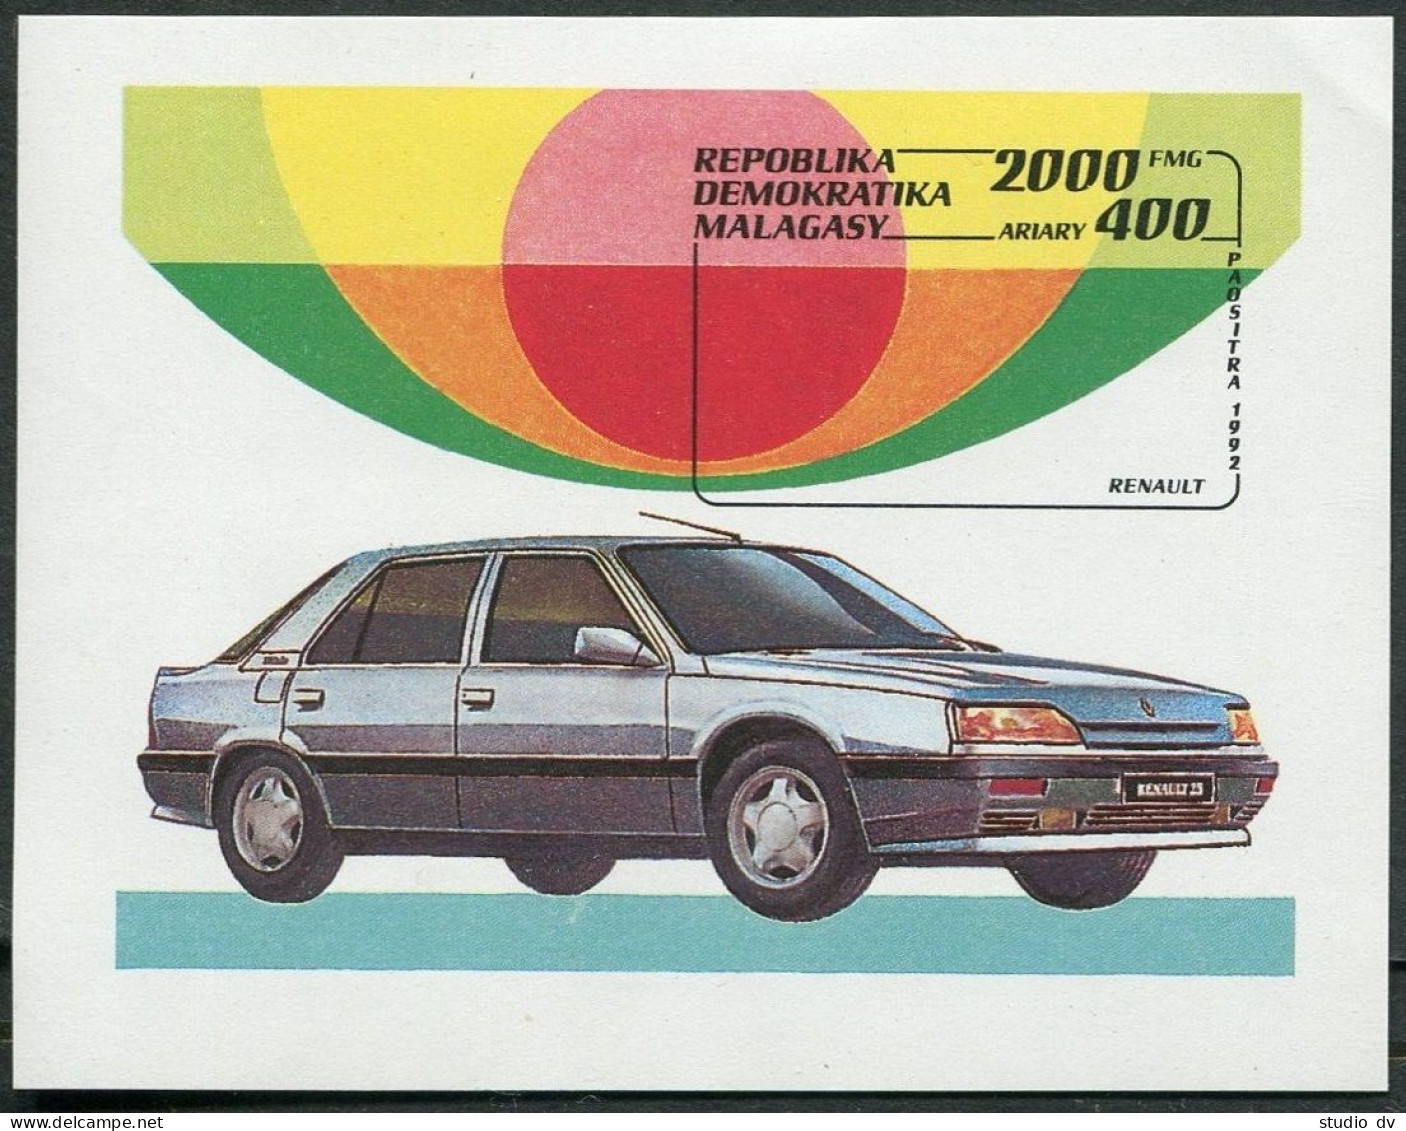 Malagasy 1113, MNH. Michel Bl.206. Automobiles 1993. - Madagascar (1960-...)